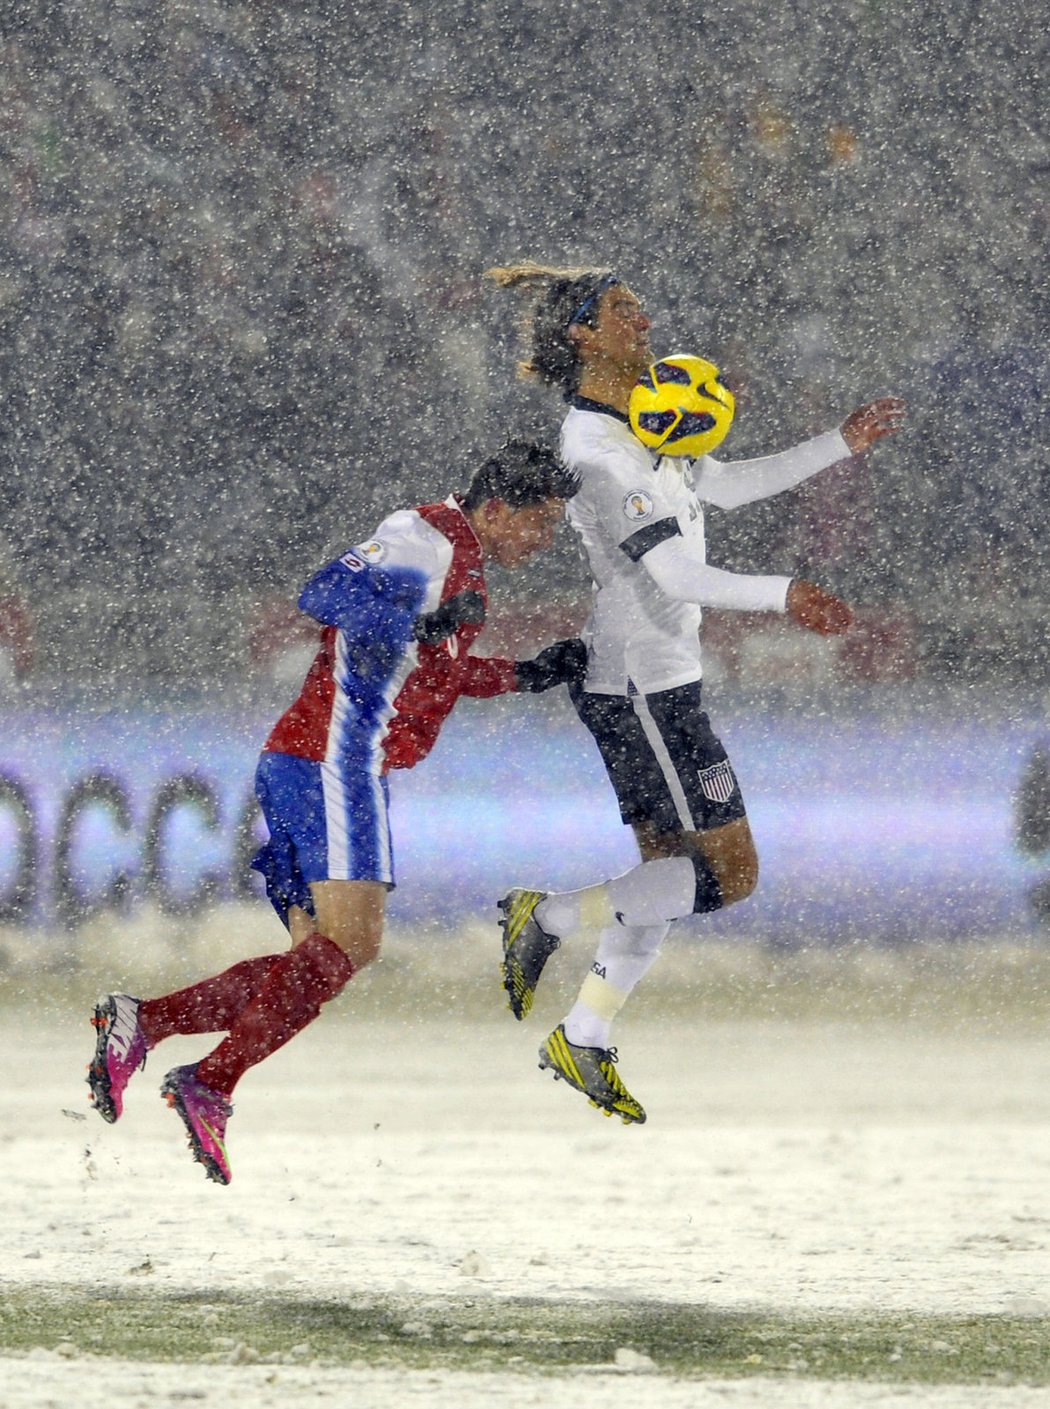 Po porážce 0:1 s fotbalisty USA v kvalifikaci mistrovství světa se Kostarika rozhodla podat oficiální stížnost mezinárodní federaci FIFA kvůli neregulérním podmínkám. Zápas v Denveru se hrál v hustém sněžení na hřišti zcela pokrytém sněhem.